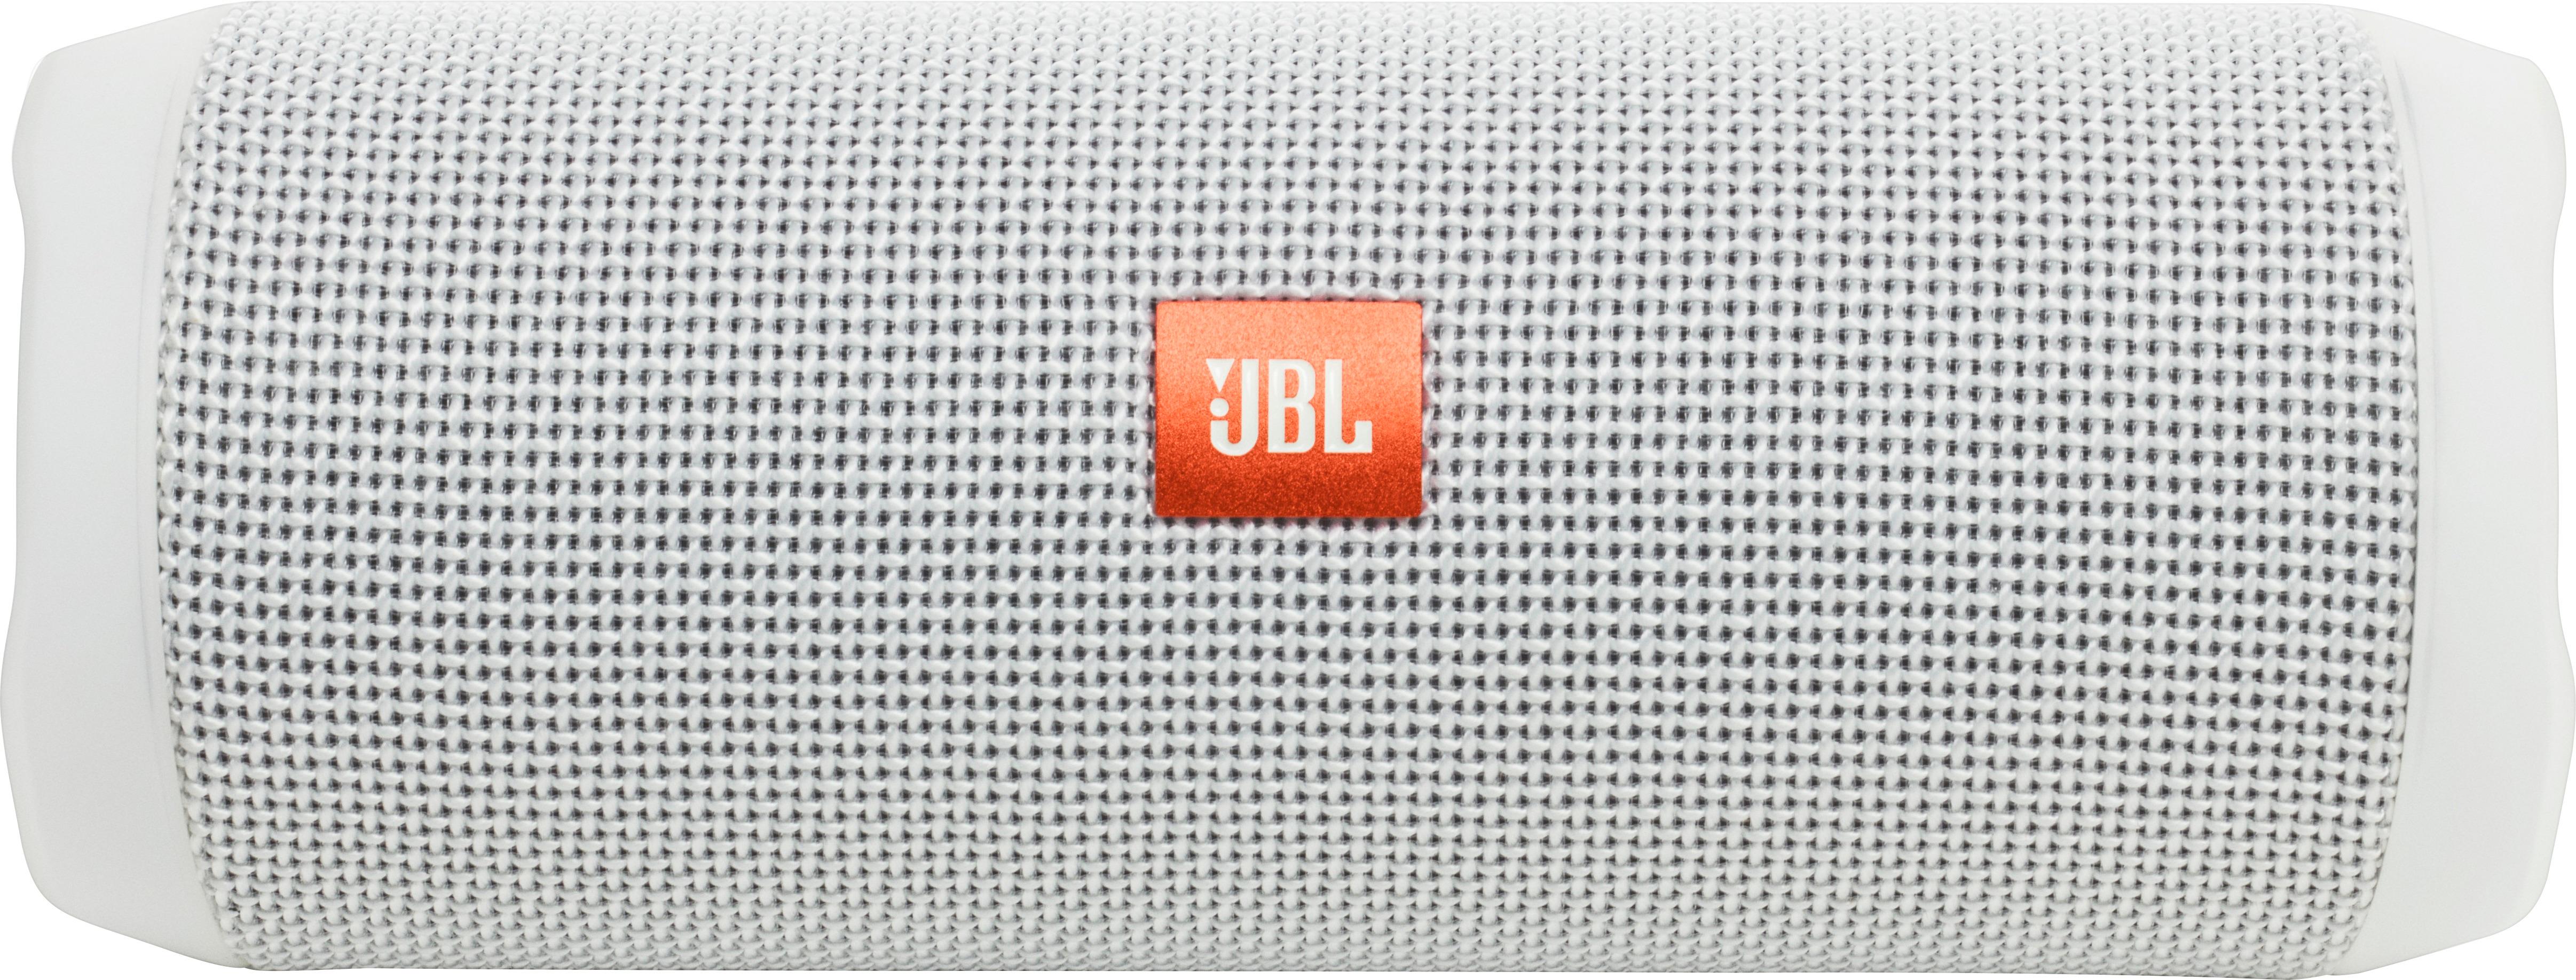 Best Buy: JBL Flip 4 Portable Bluetooth Speaker White JBLFLIP4WHTAM